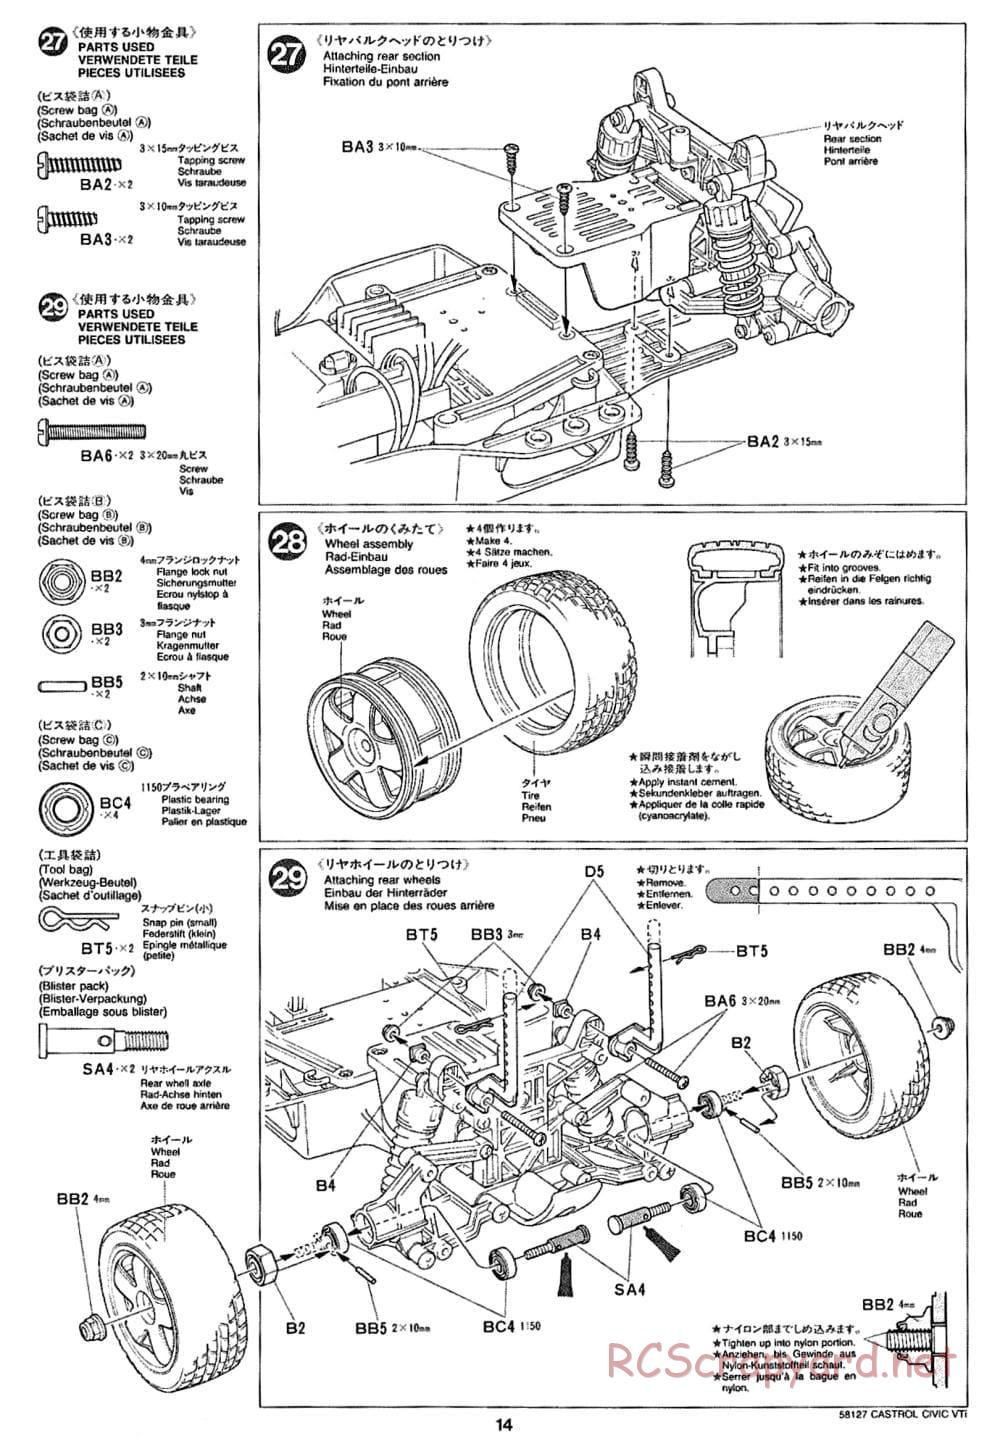 Tamiya - Castrol Honda Civic VTi - FF-01 Chassis - Manual - Page 14